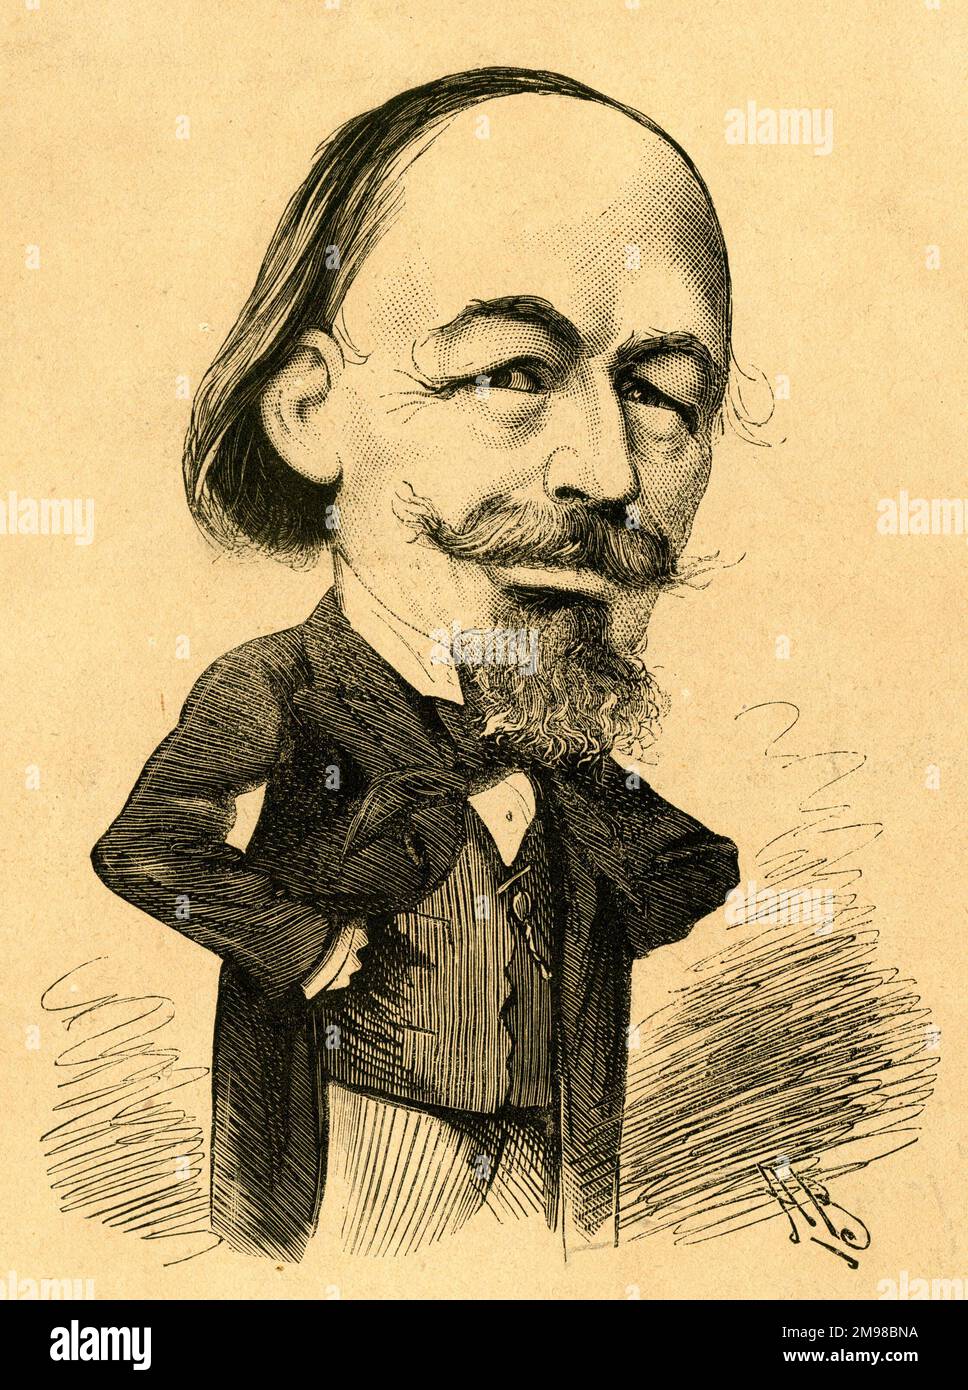 Cartoon, William Tinsley (1831-1902), britischer Verleger -- A Bill 'of the Play' (nicht Shakespeare, sondern Tinsley). Zusammen mit seinem Bruder Edward gründete er die Firma von Tinsley Brothers und veröffentlichte mehrere führende Autoren der damaligen Zeit. Stockfoto